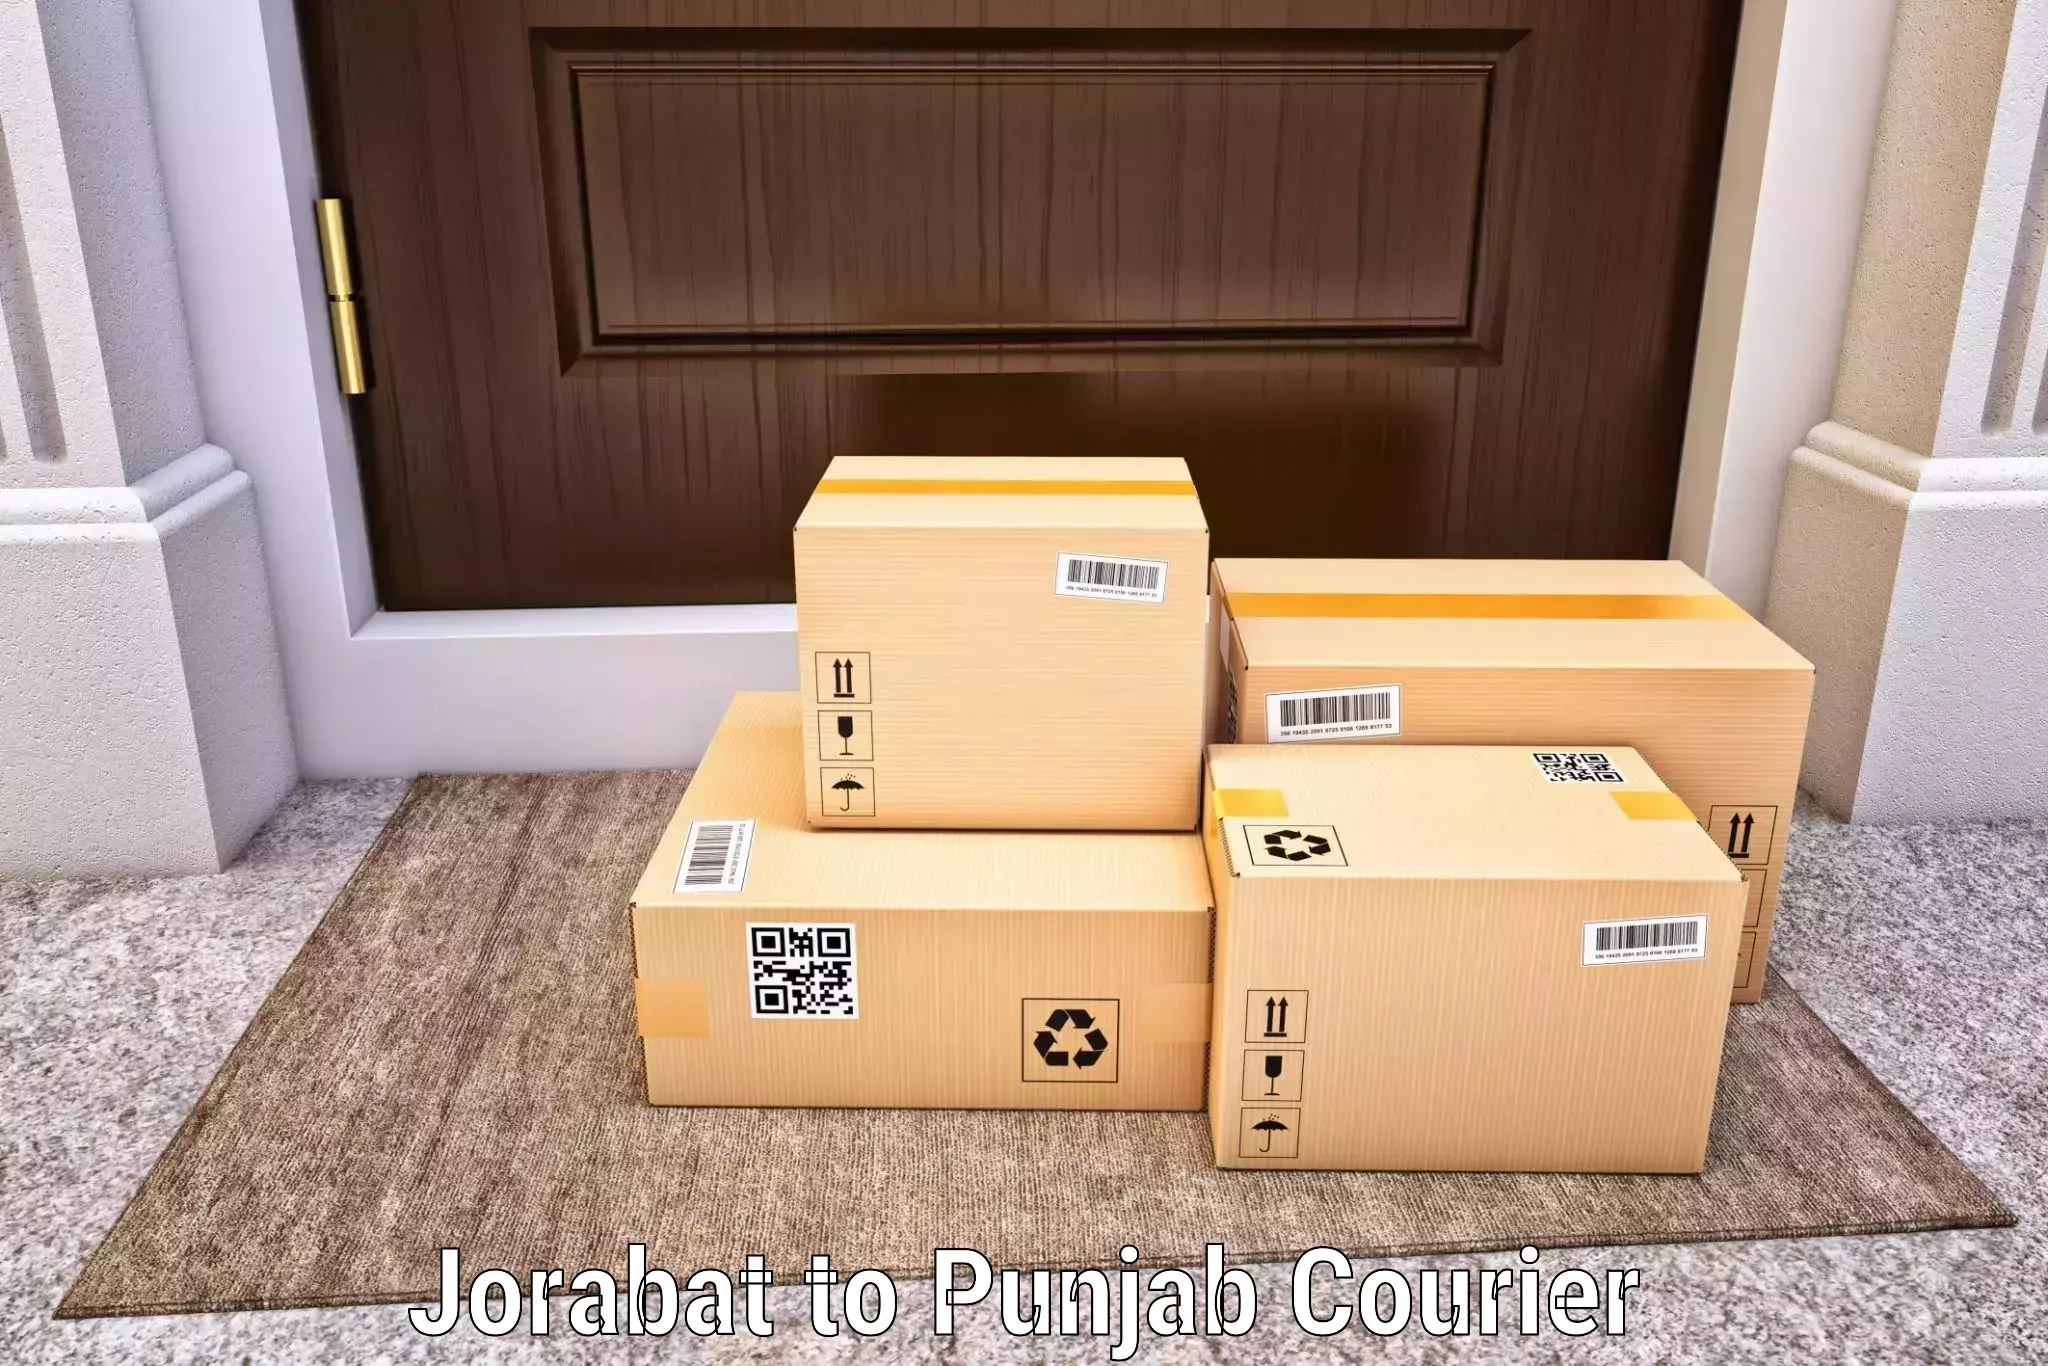 On-time shipping guarantee Jorabat to Amritsar